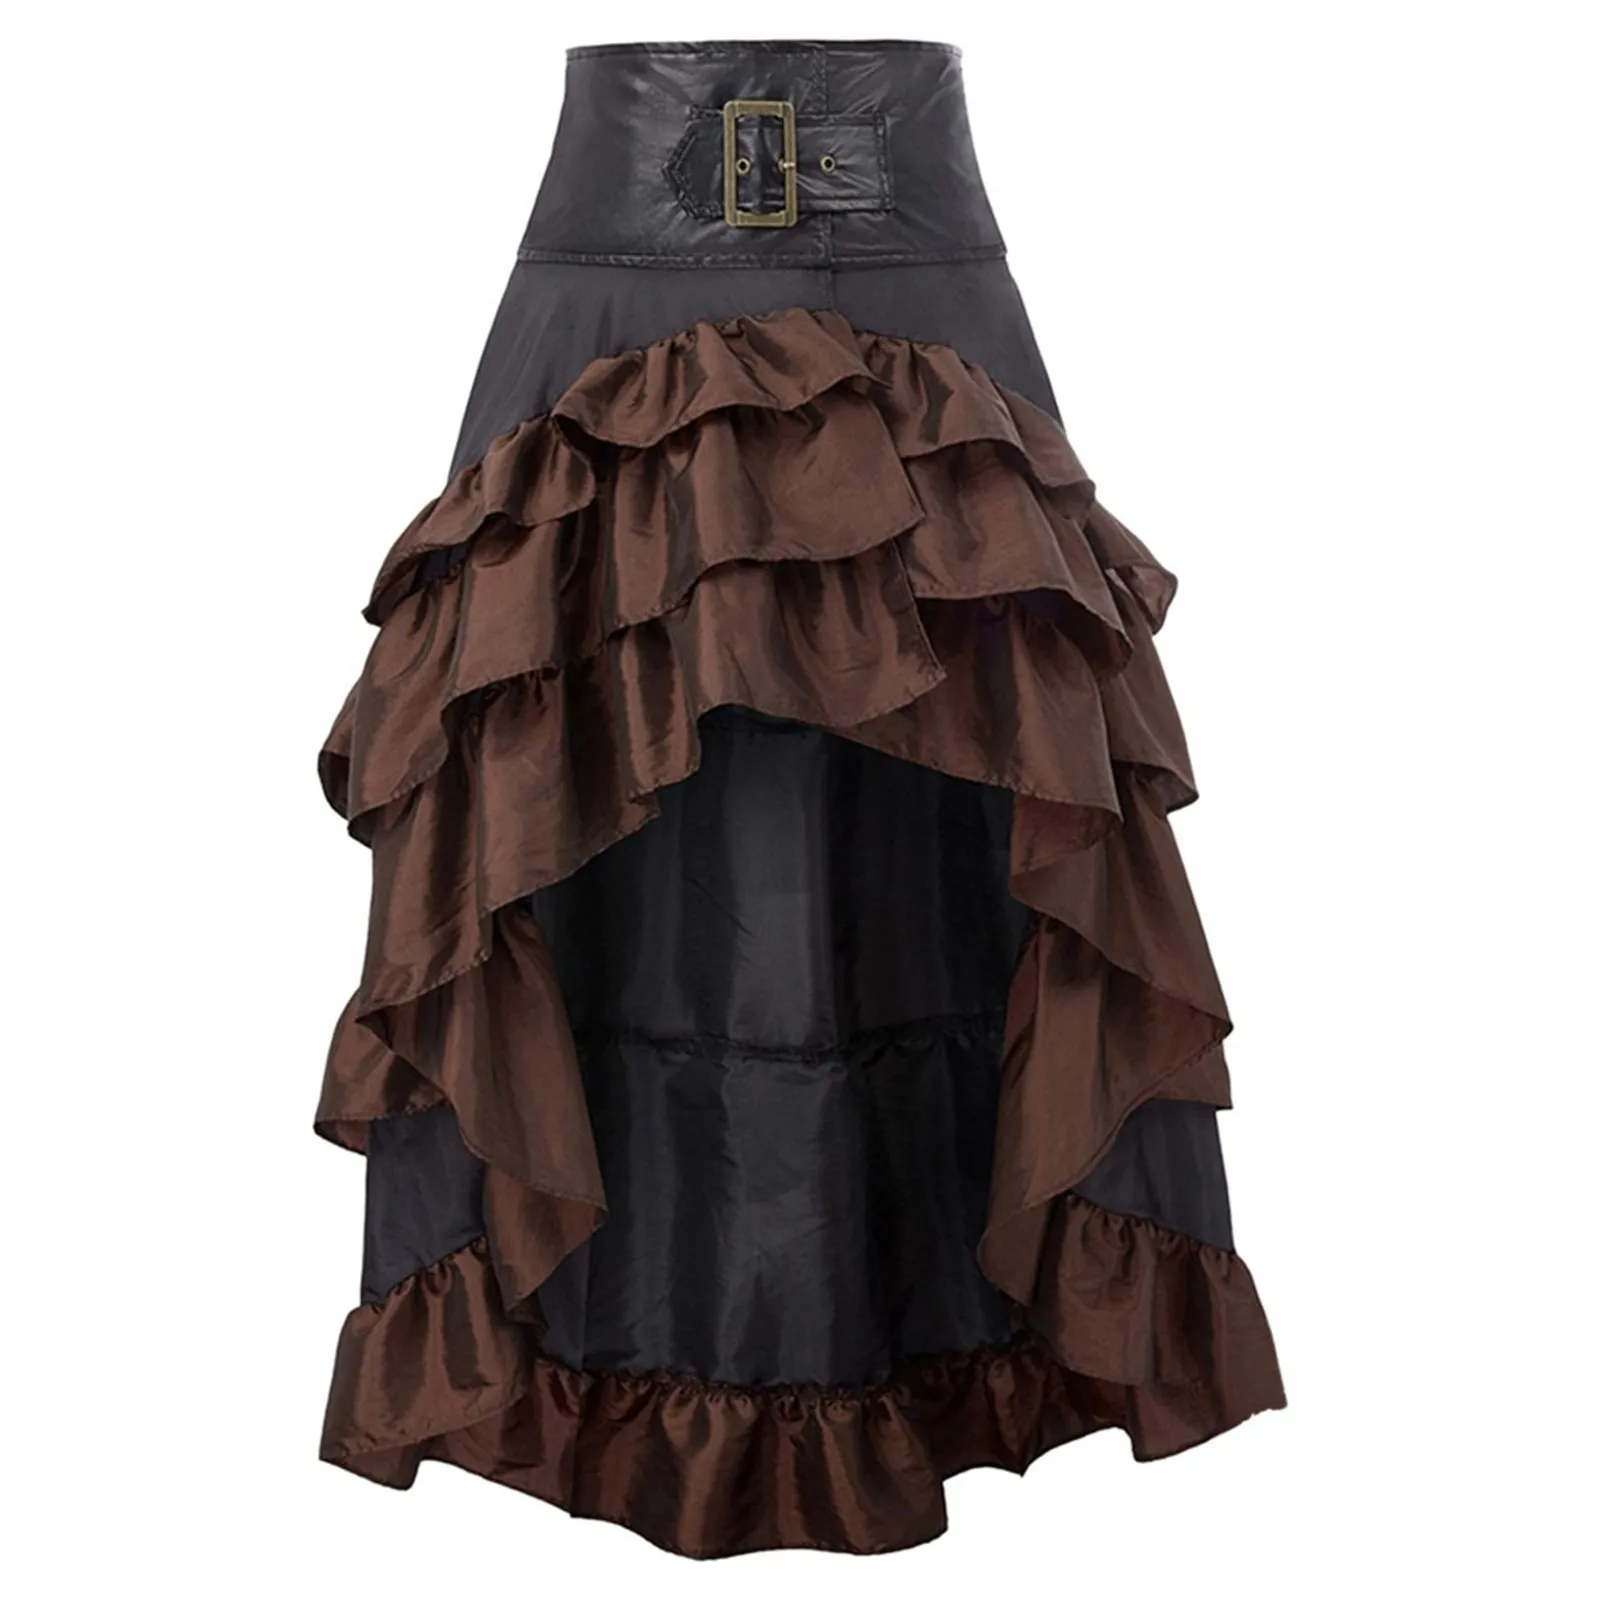 

Женская винтажная юбка с оборками, элегантная юбка составного кроя с высокой талией, модель сезона лето-осень 2023 года